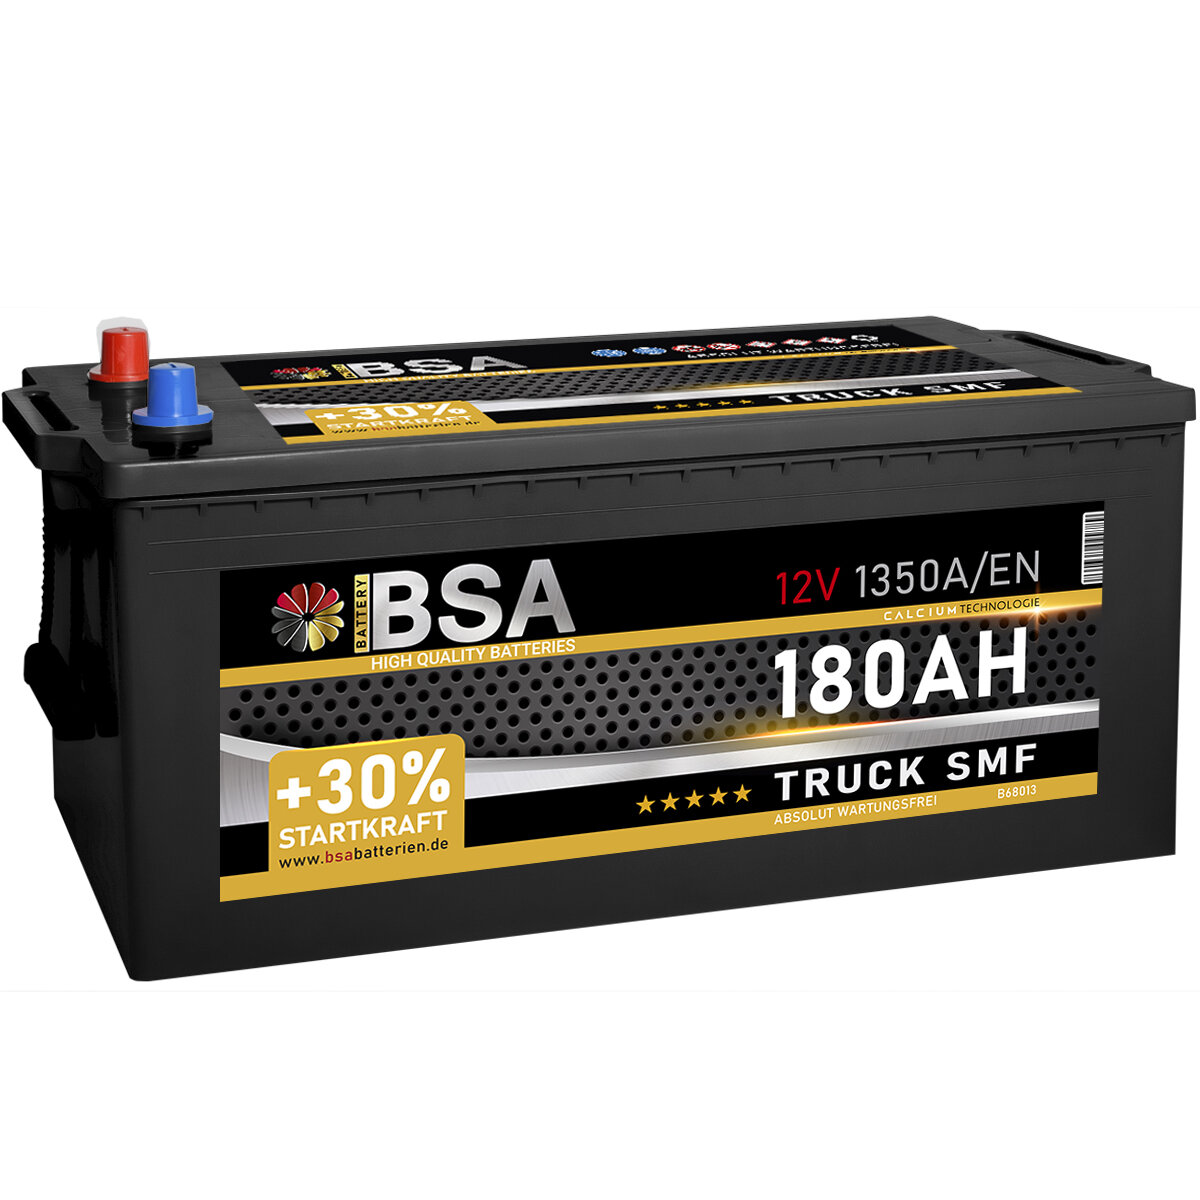 BSA LKW SMF Batterie 180Ah 12V, 169,90 €